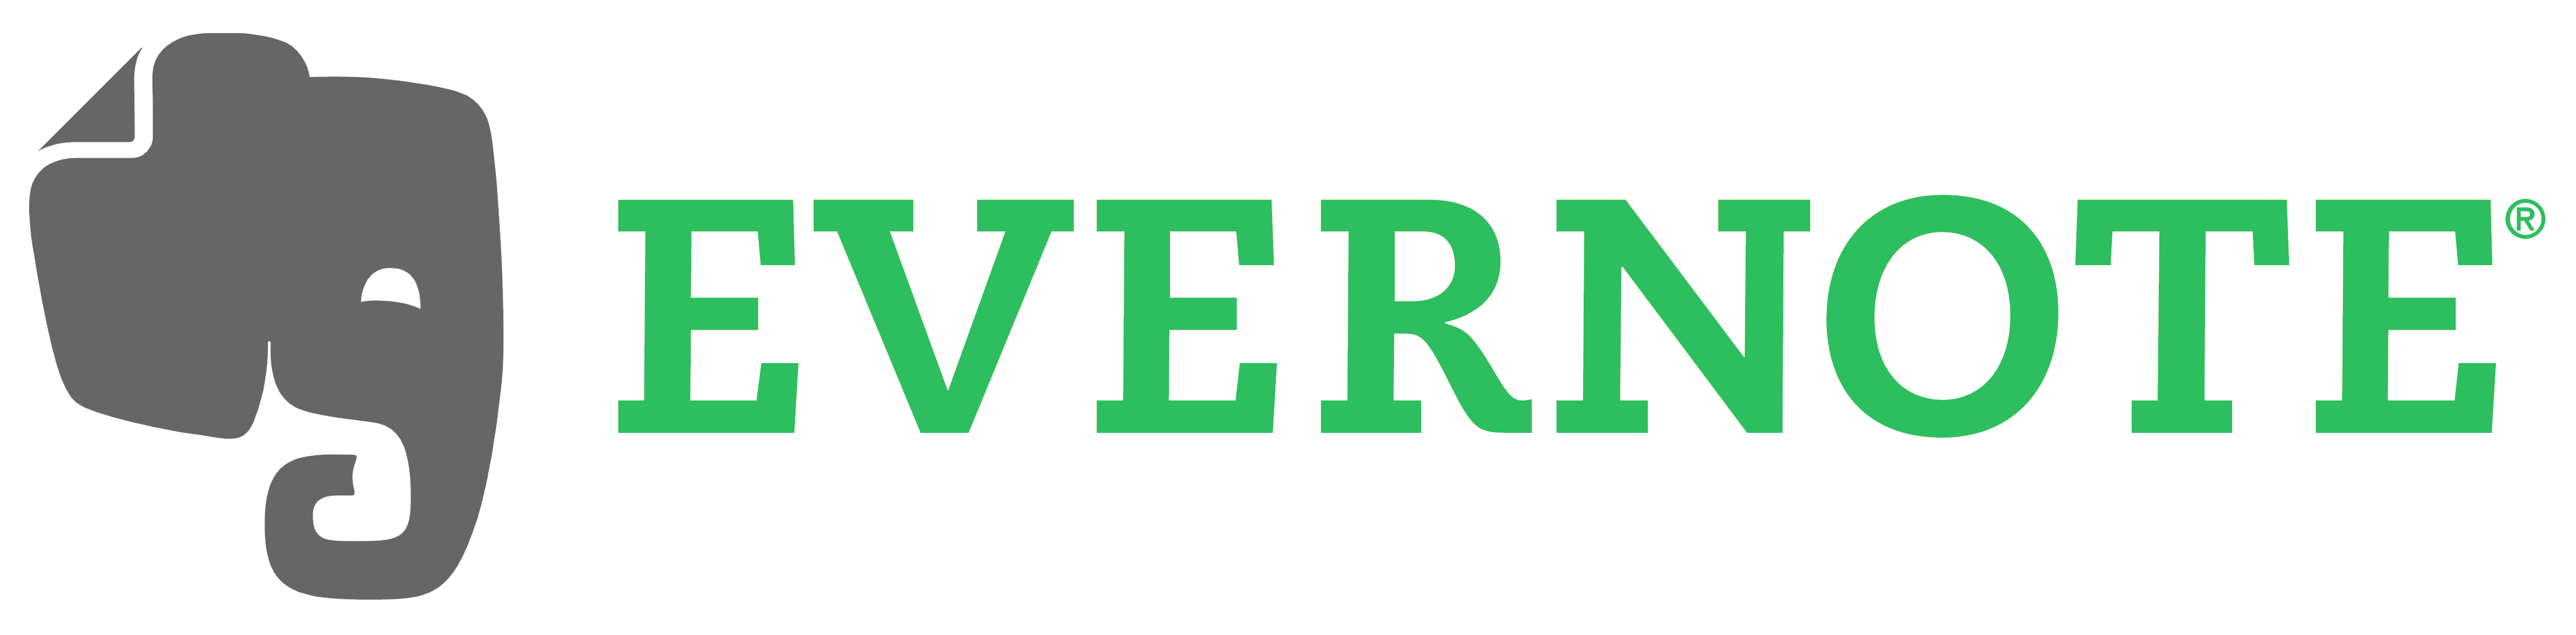 Evernote Logo - Evernote – Logos Download